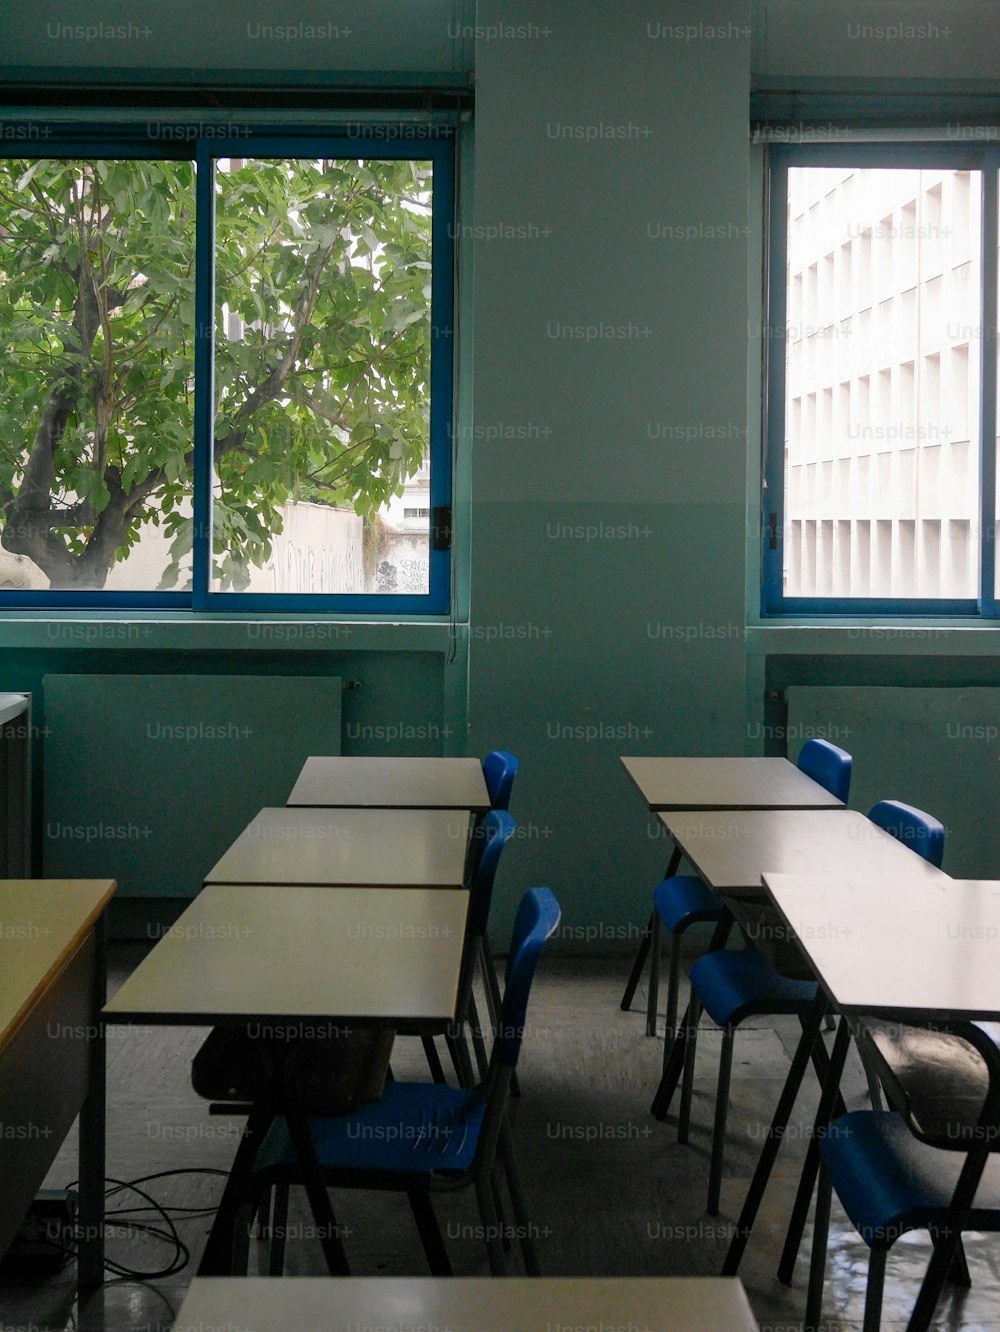 Un aula vacía con escritorios y sillas